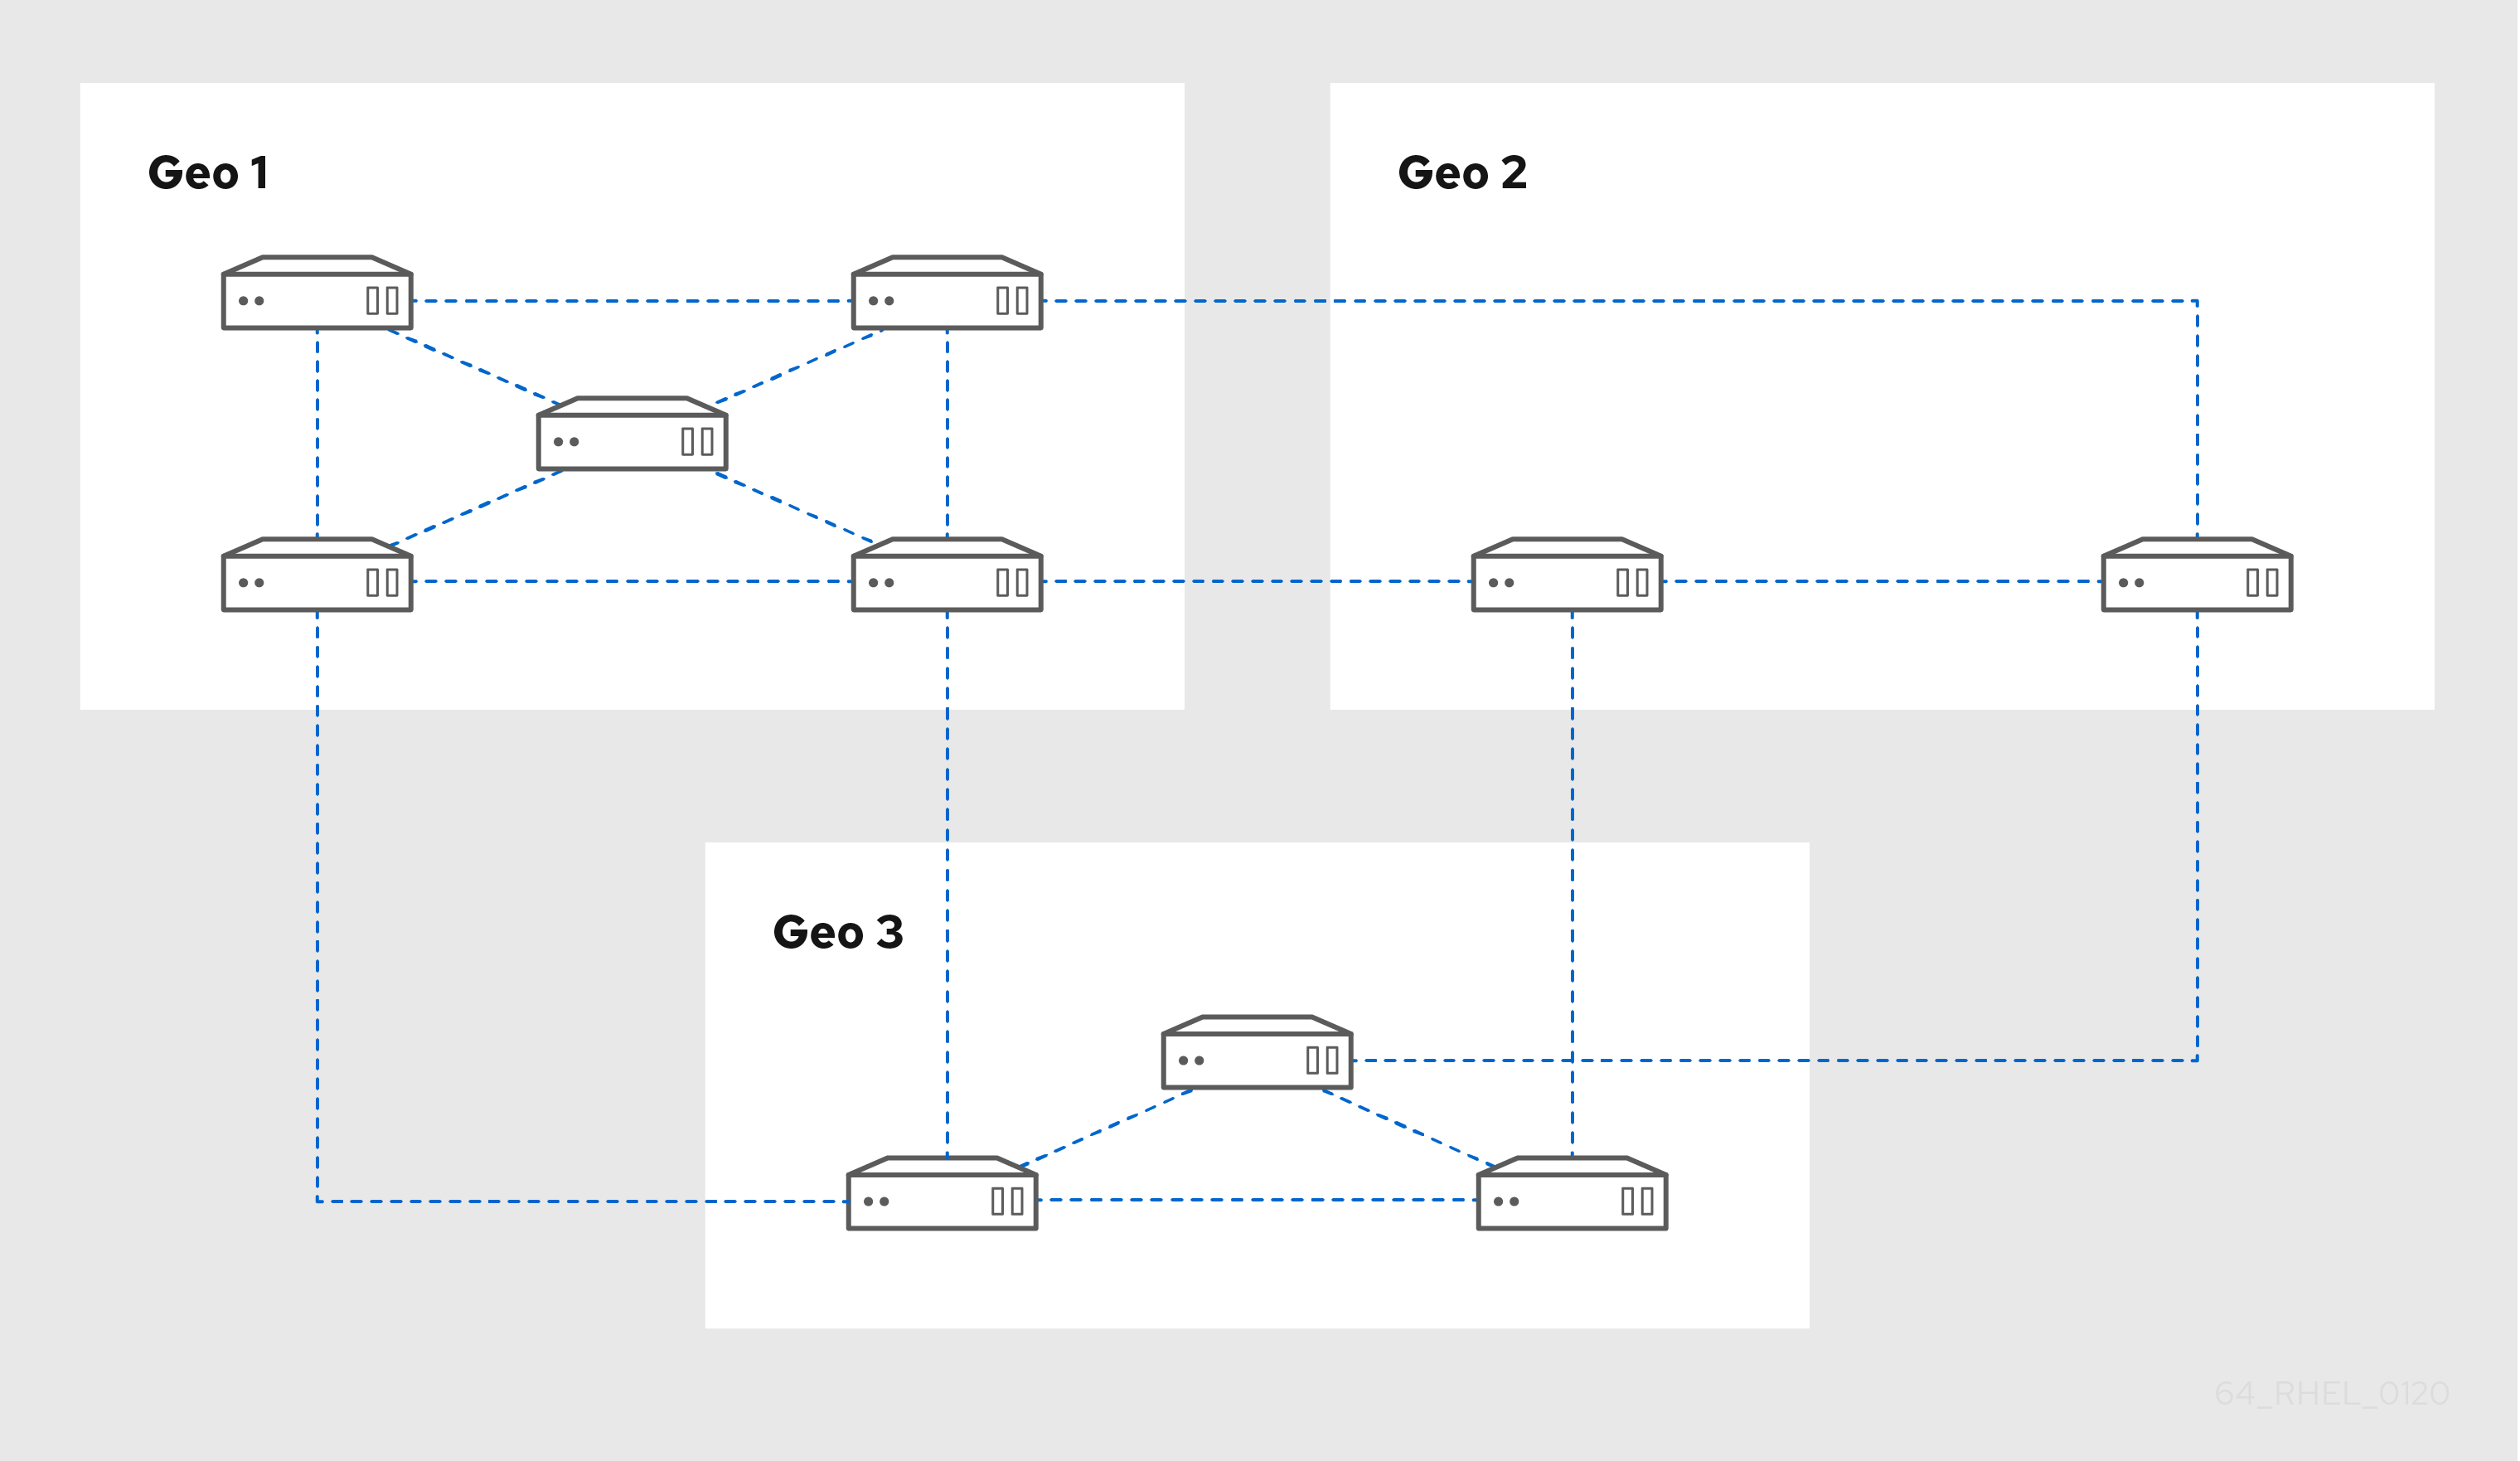 显示 3 个数据中心：Geo 1 有 5 台服务器相互连接 - Geo 2 有两台服务器互相连接 - Geo 3 有 3 个以三角形的方式连接的服务器。每个 Geo 有 2 个连接，用来将它的两个服务器连接到下一个 Geo 的 2 个服务器连接。